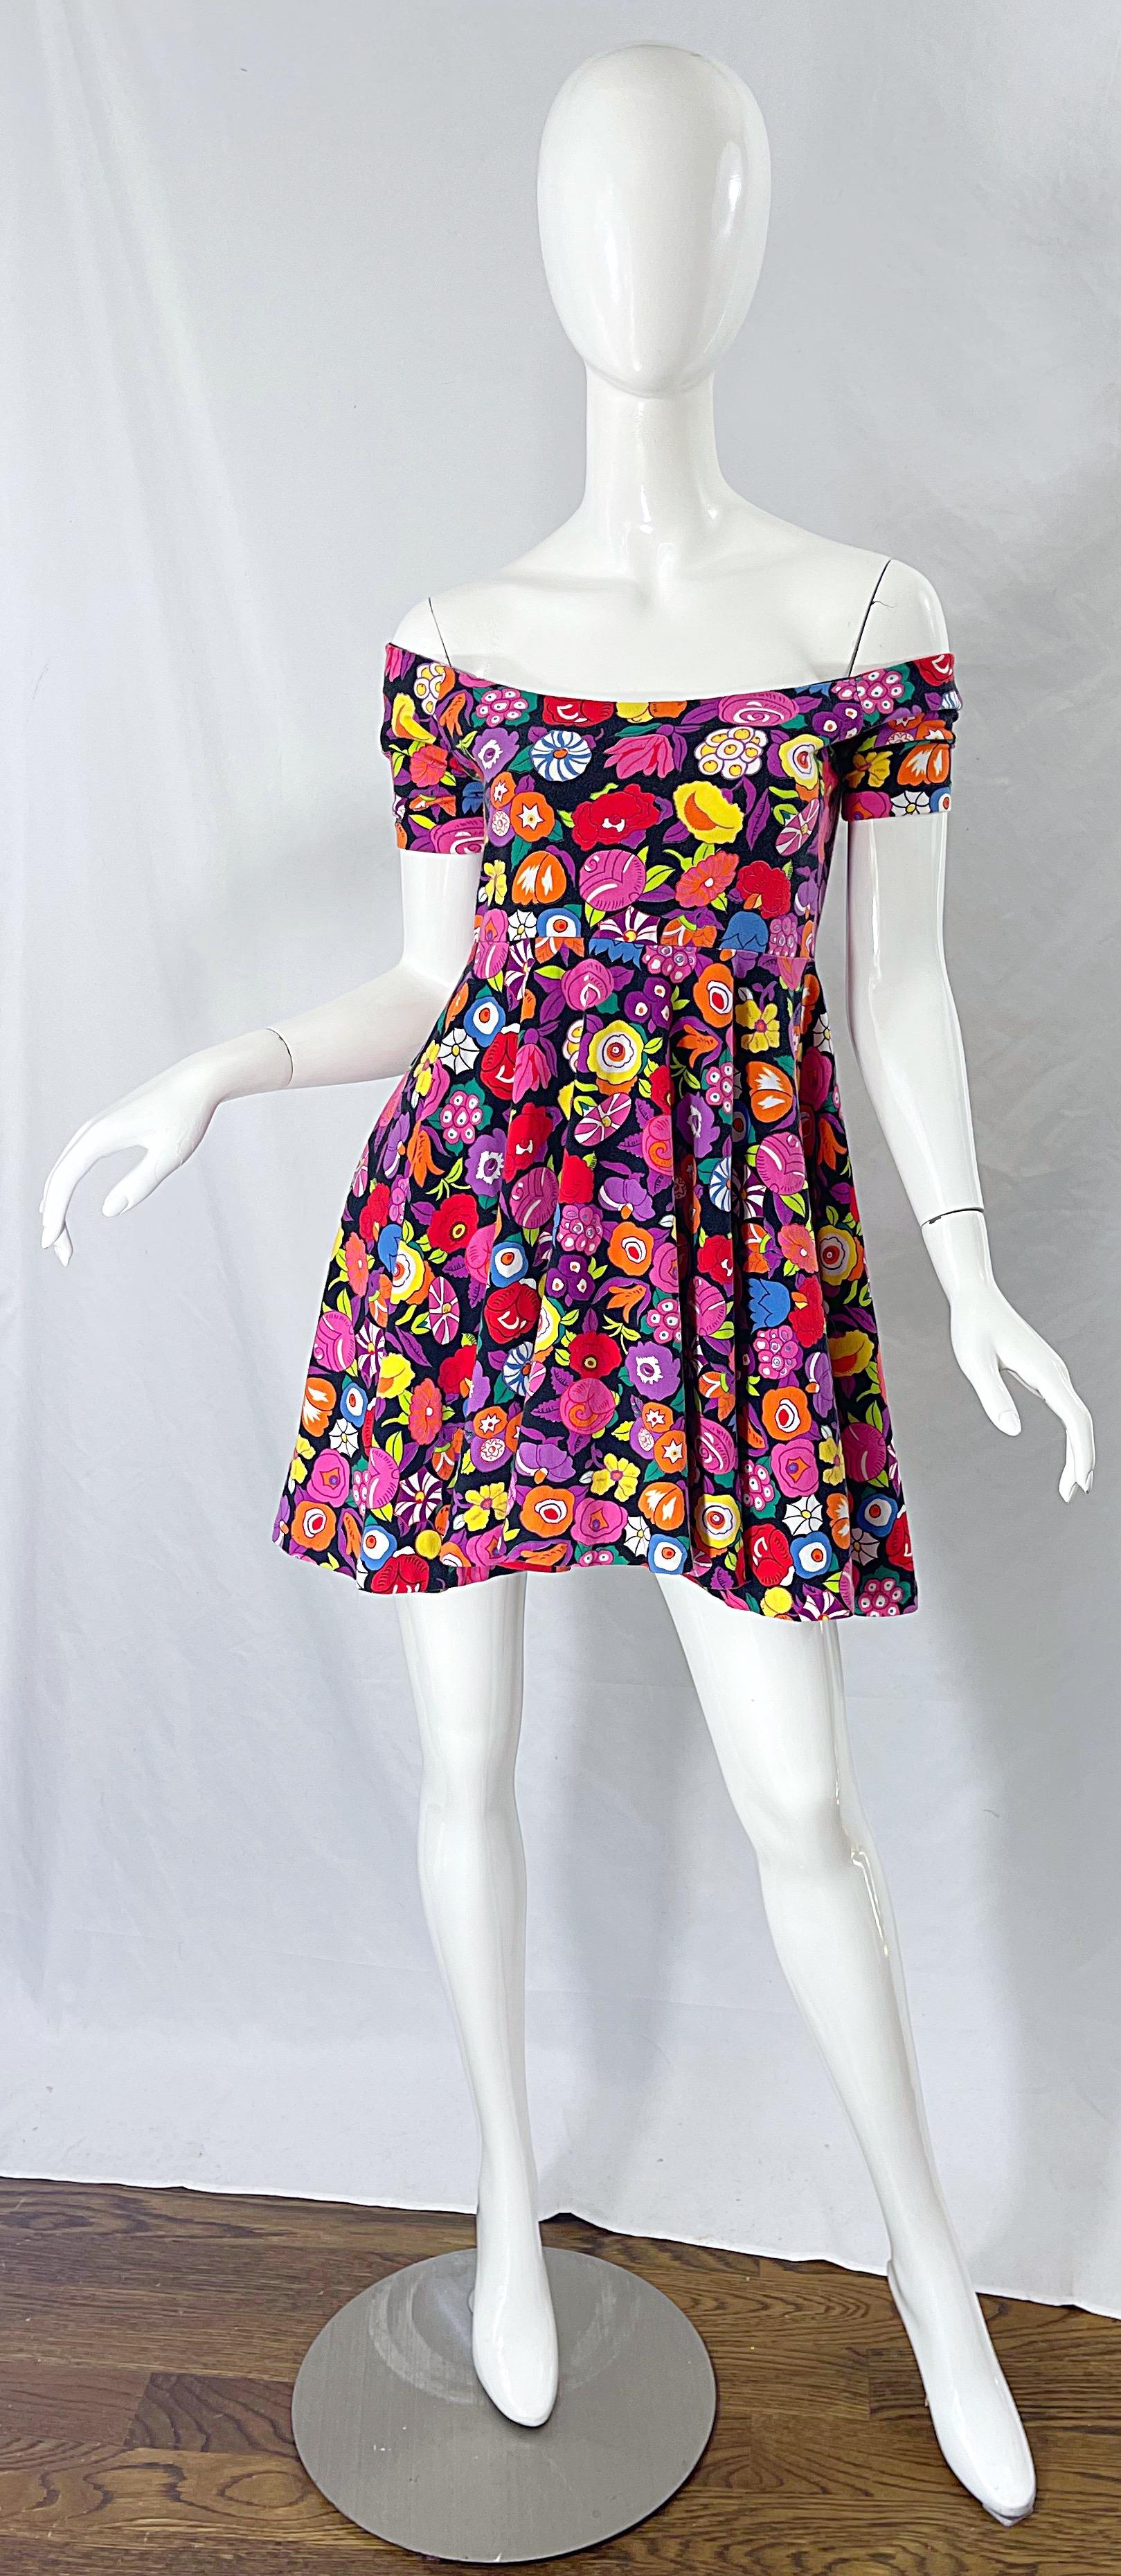 Betsey Johnson Mini Dresses - For Sale on 1stDibs | betsey johnson 